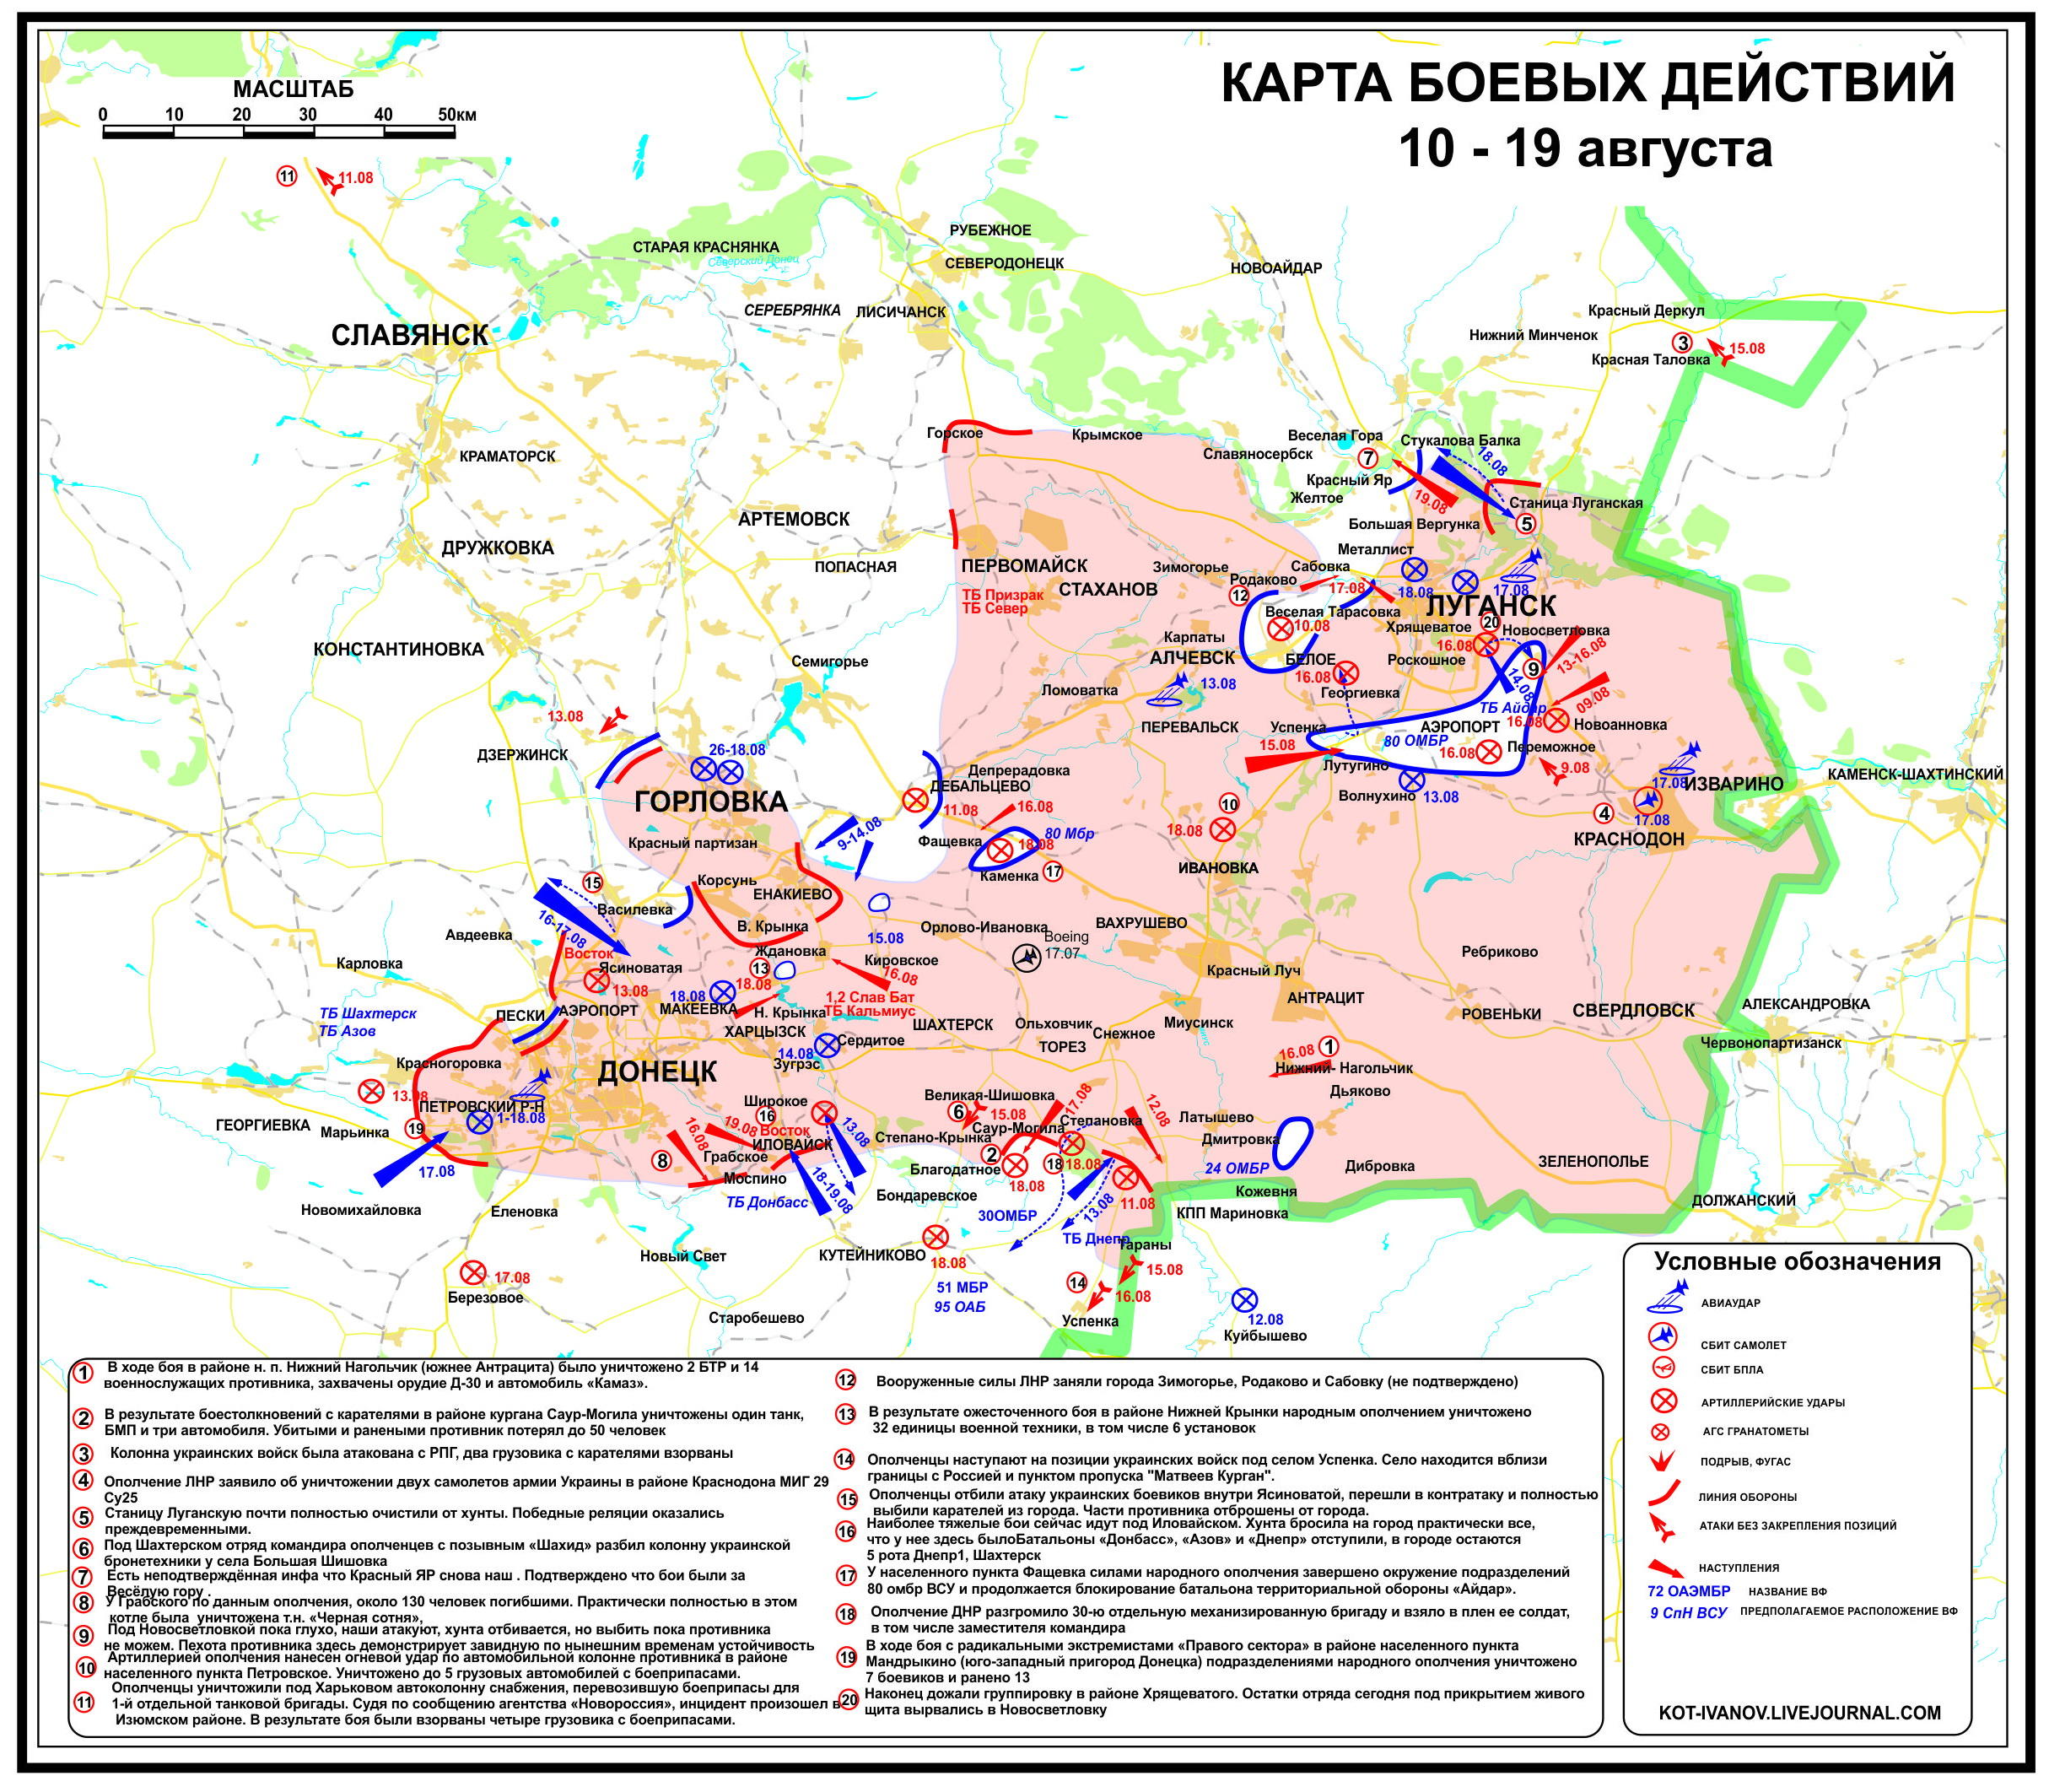 Situation_in_der_Ostukraine_zum_neunzehnten_August_aus_Separatistensicht.jpg